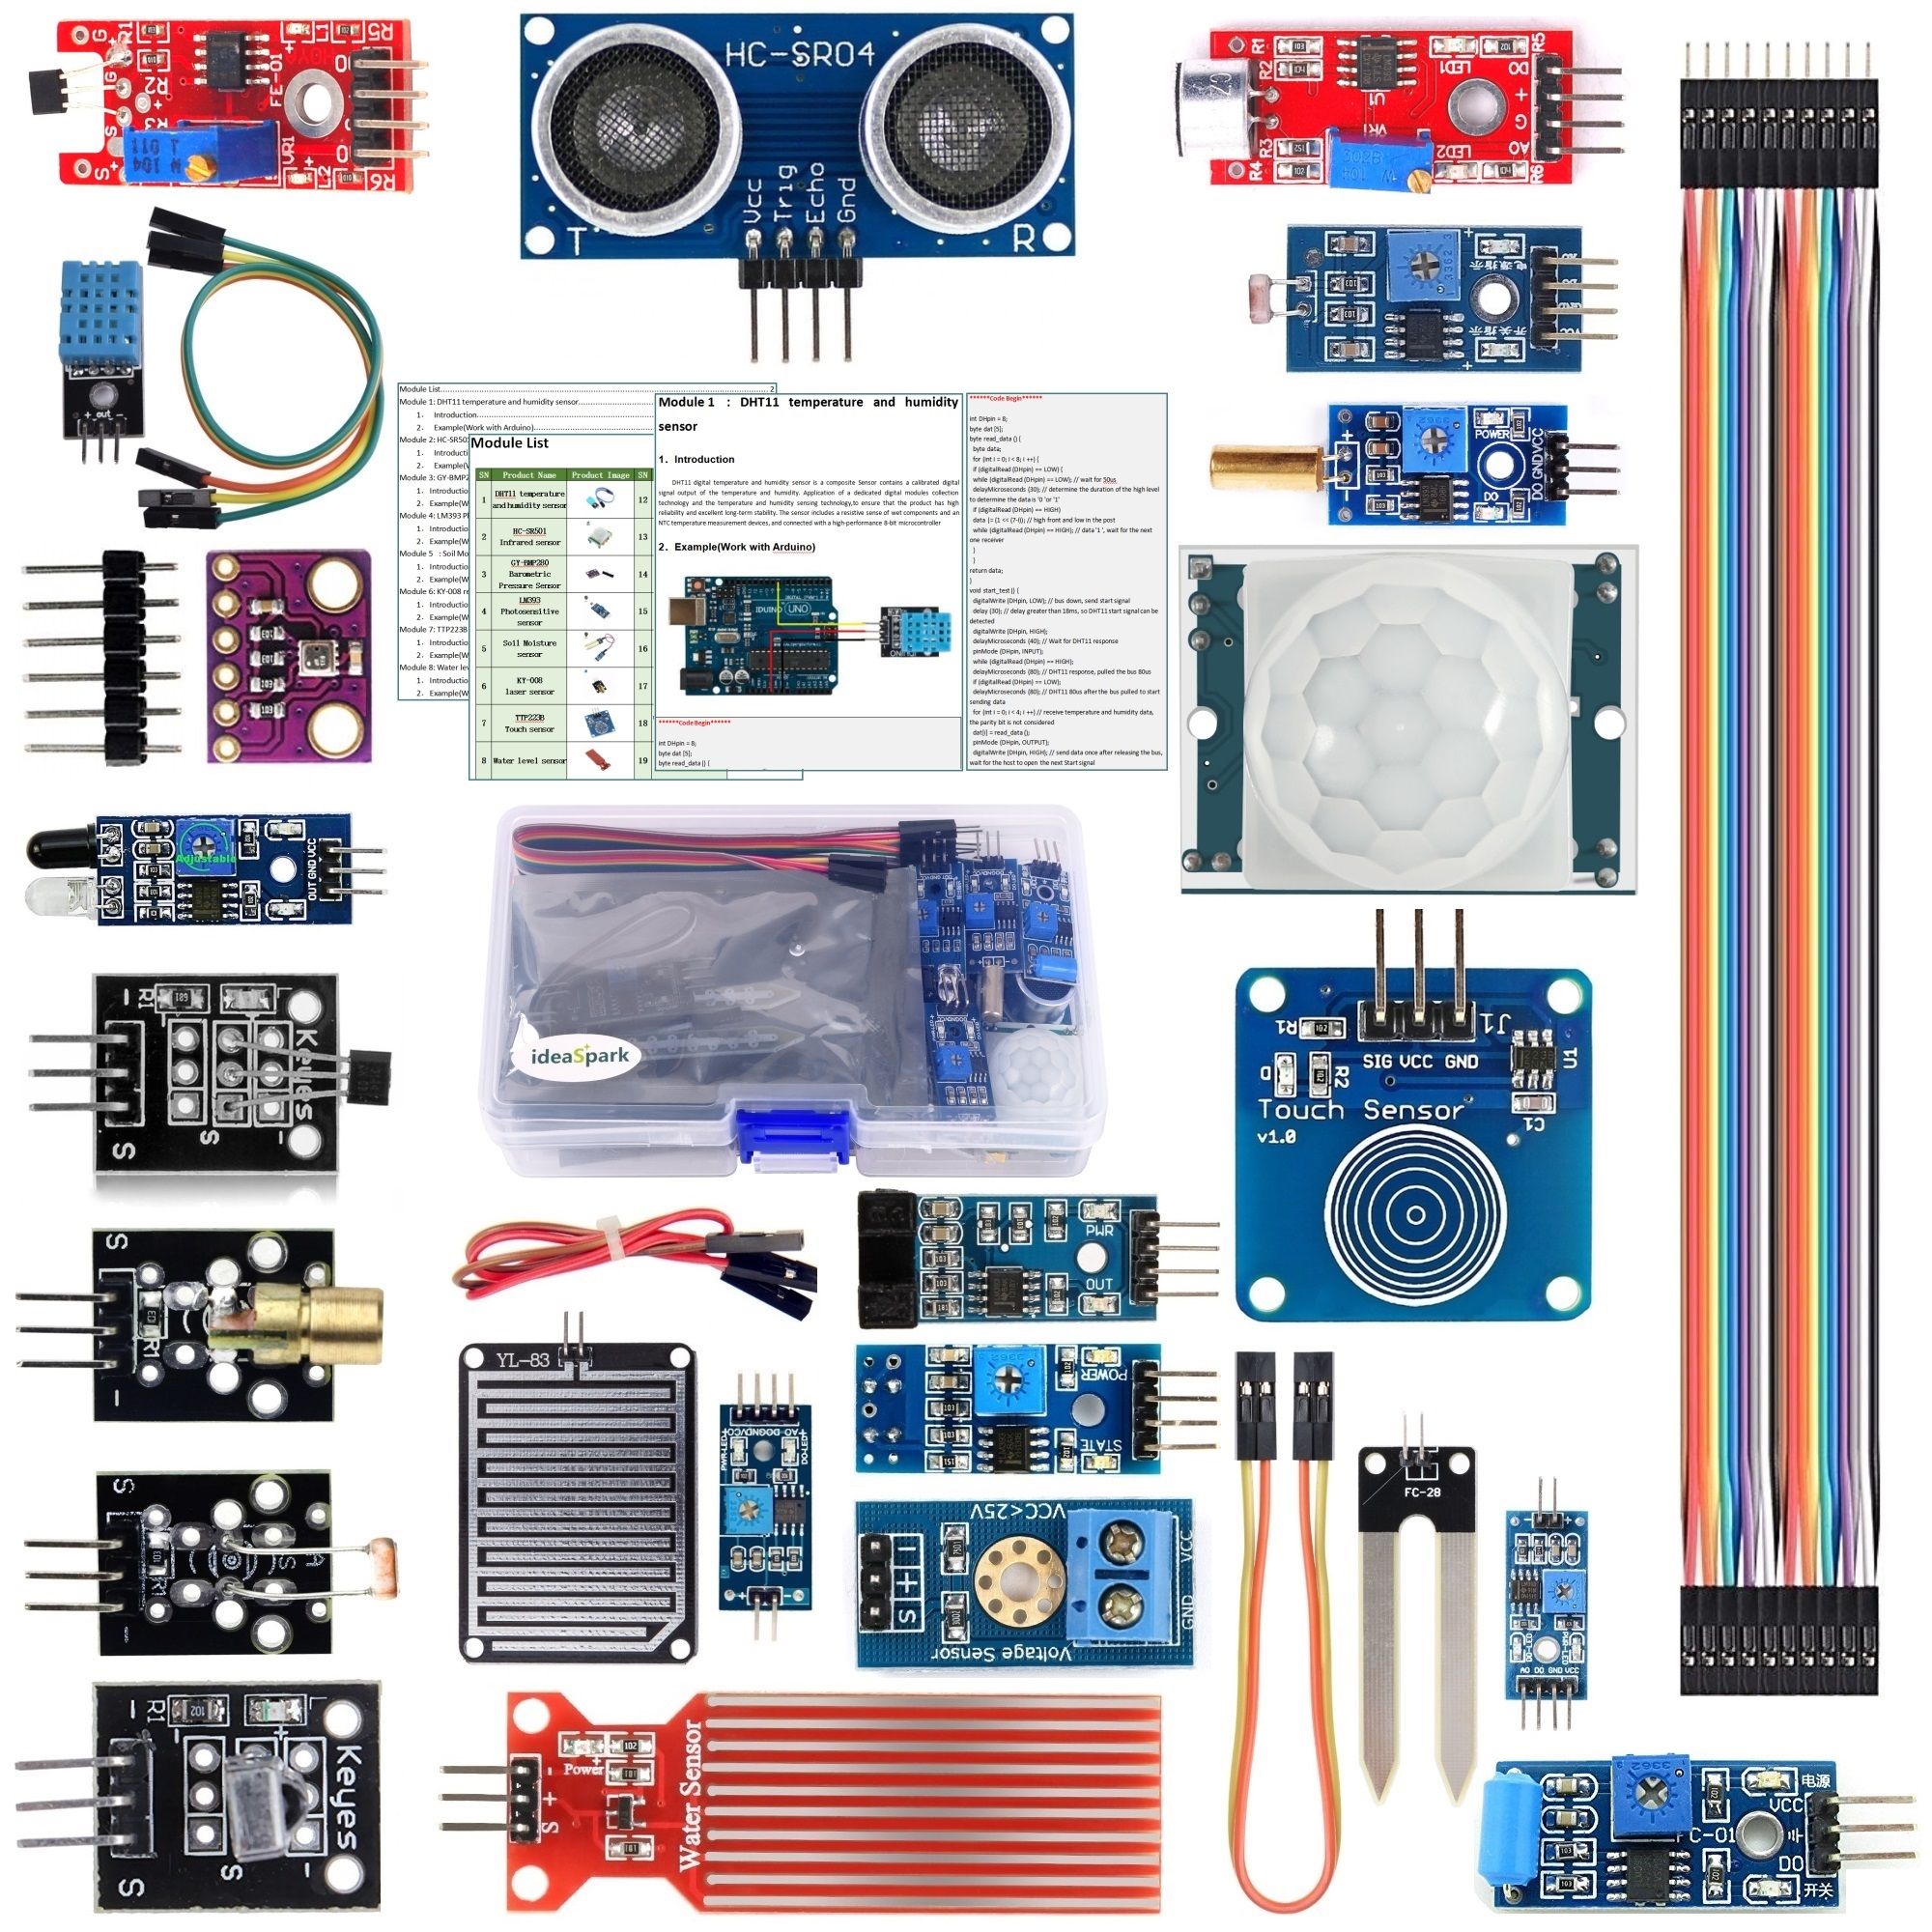 ideaspark Arduino Sensor Raspberry Pi Module Kits 22-in-1 for Arduino UNO R3 MEGA 2560 Nano Smart Home IoT Beginner Learning Starter Kit Tutorial Included 